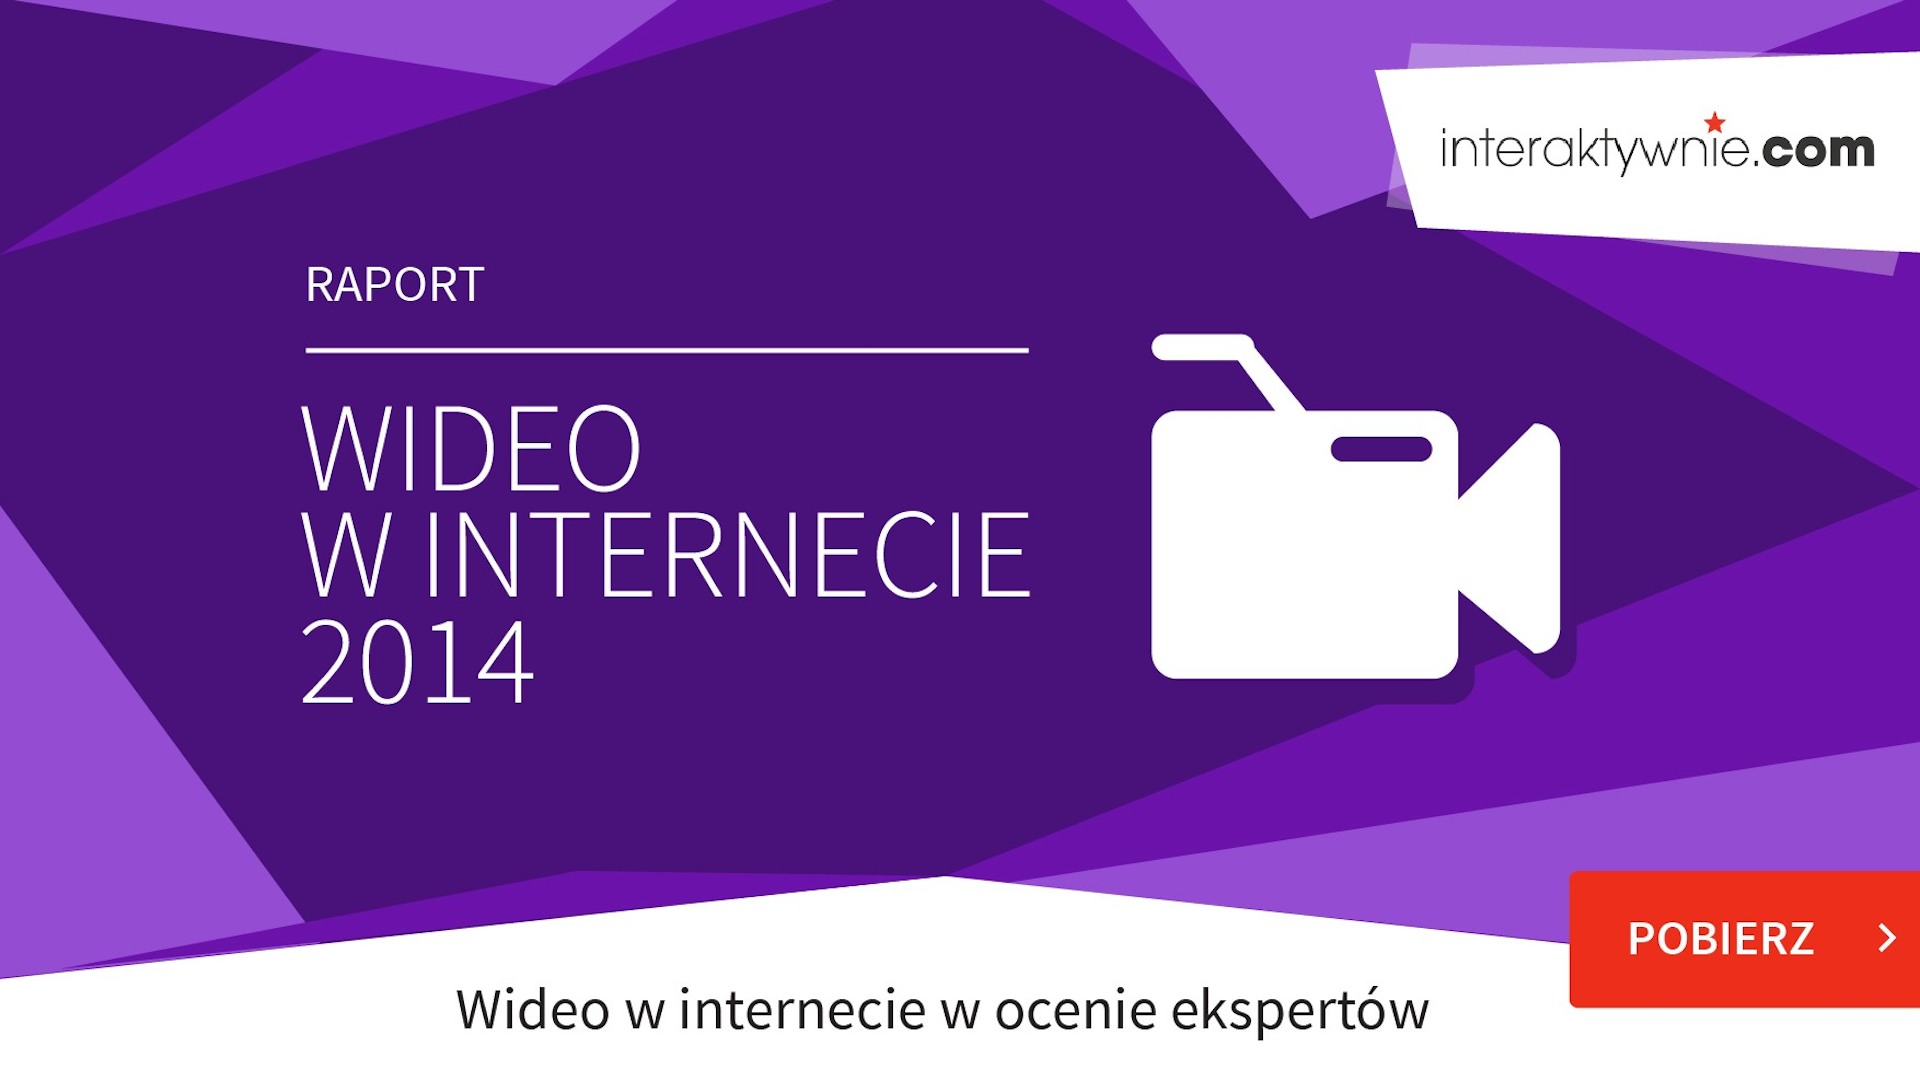 Polskie reklamy wideo są słabe, ale wydajemy na nie coraz więcej wideo 2014 mediaruninteraktywnie